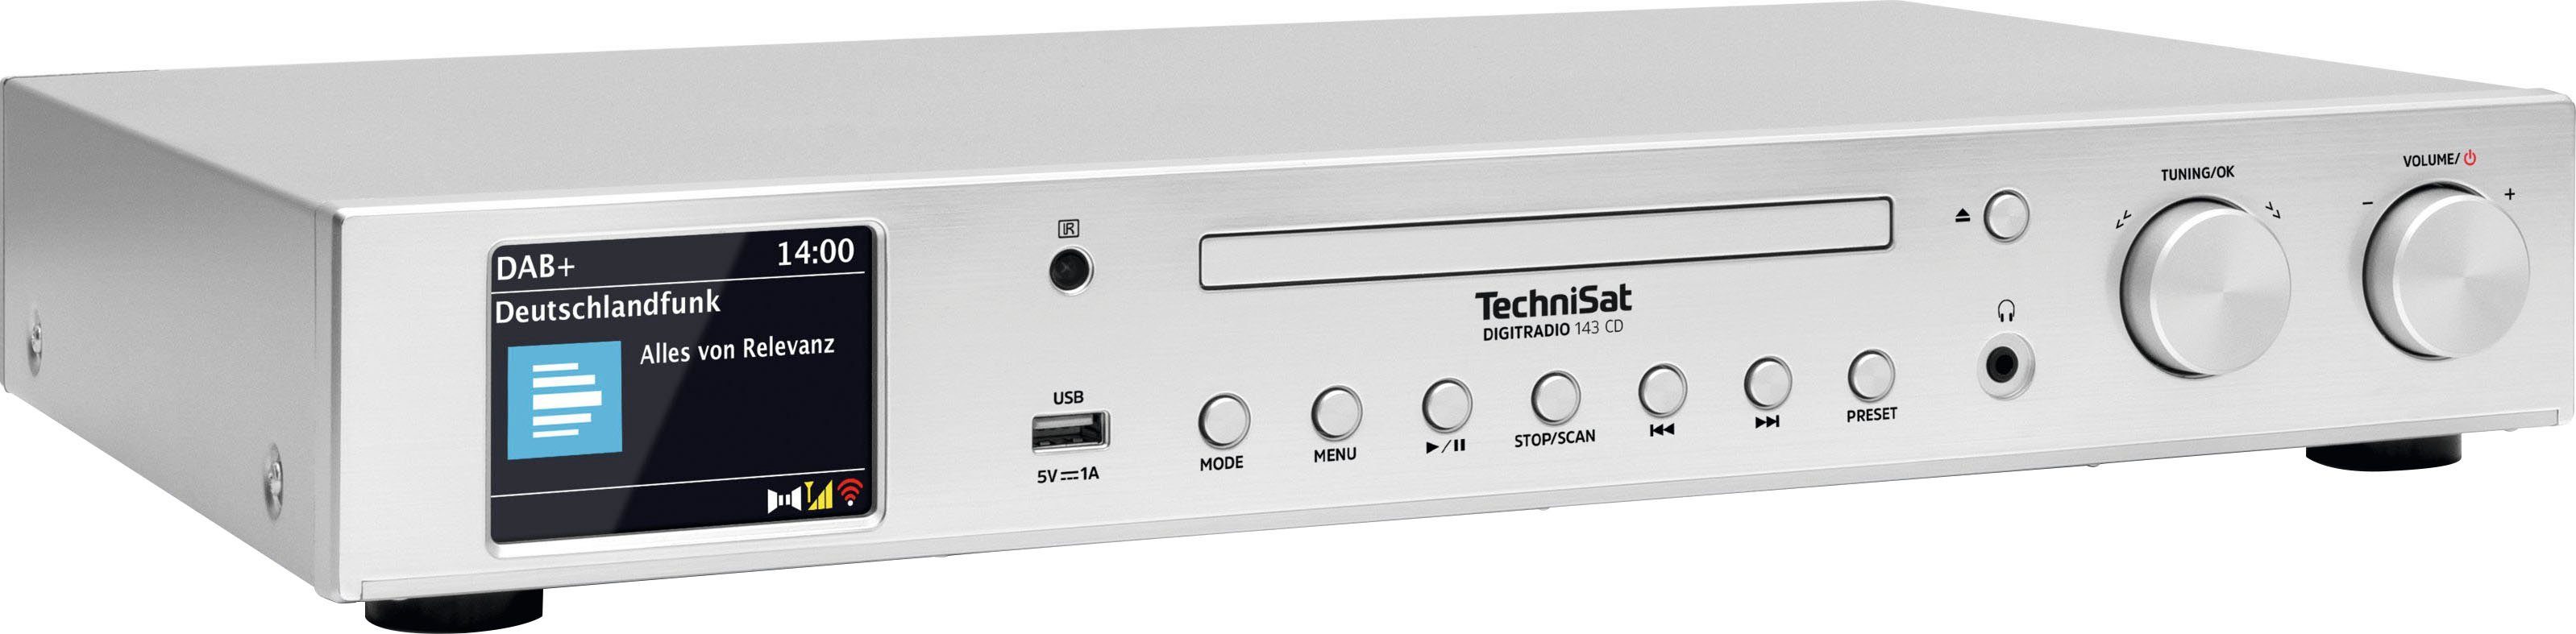 (V3) CD TechniSat DIGITRADIO silber (Digitalradio (DAB), Digitalradio Internetradio, 143 (DAB) mit RDS) UKW